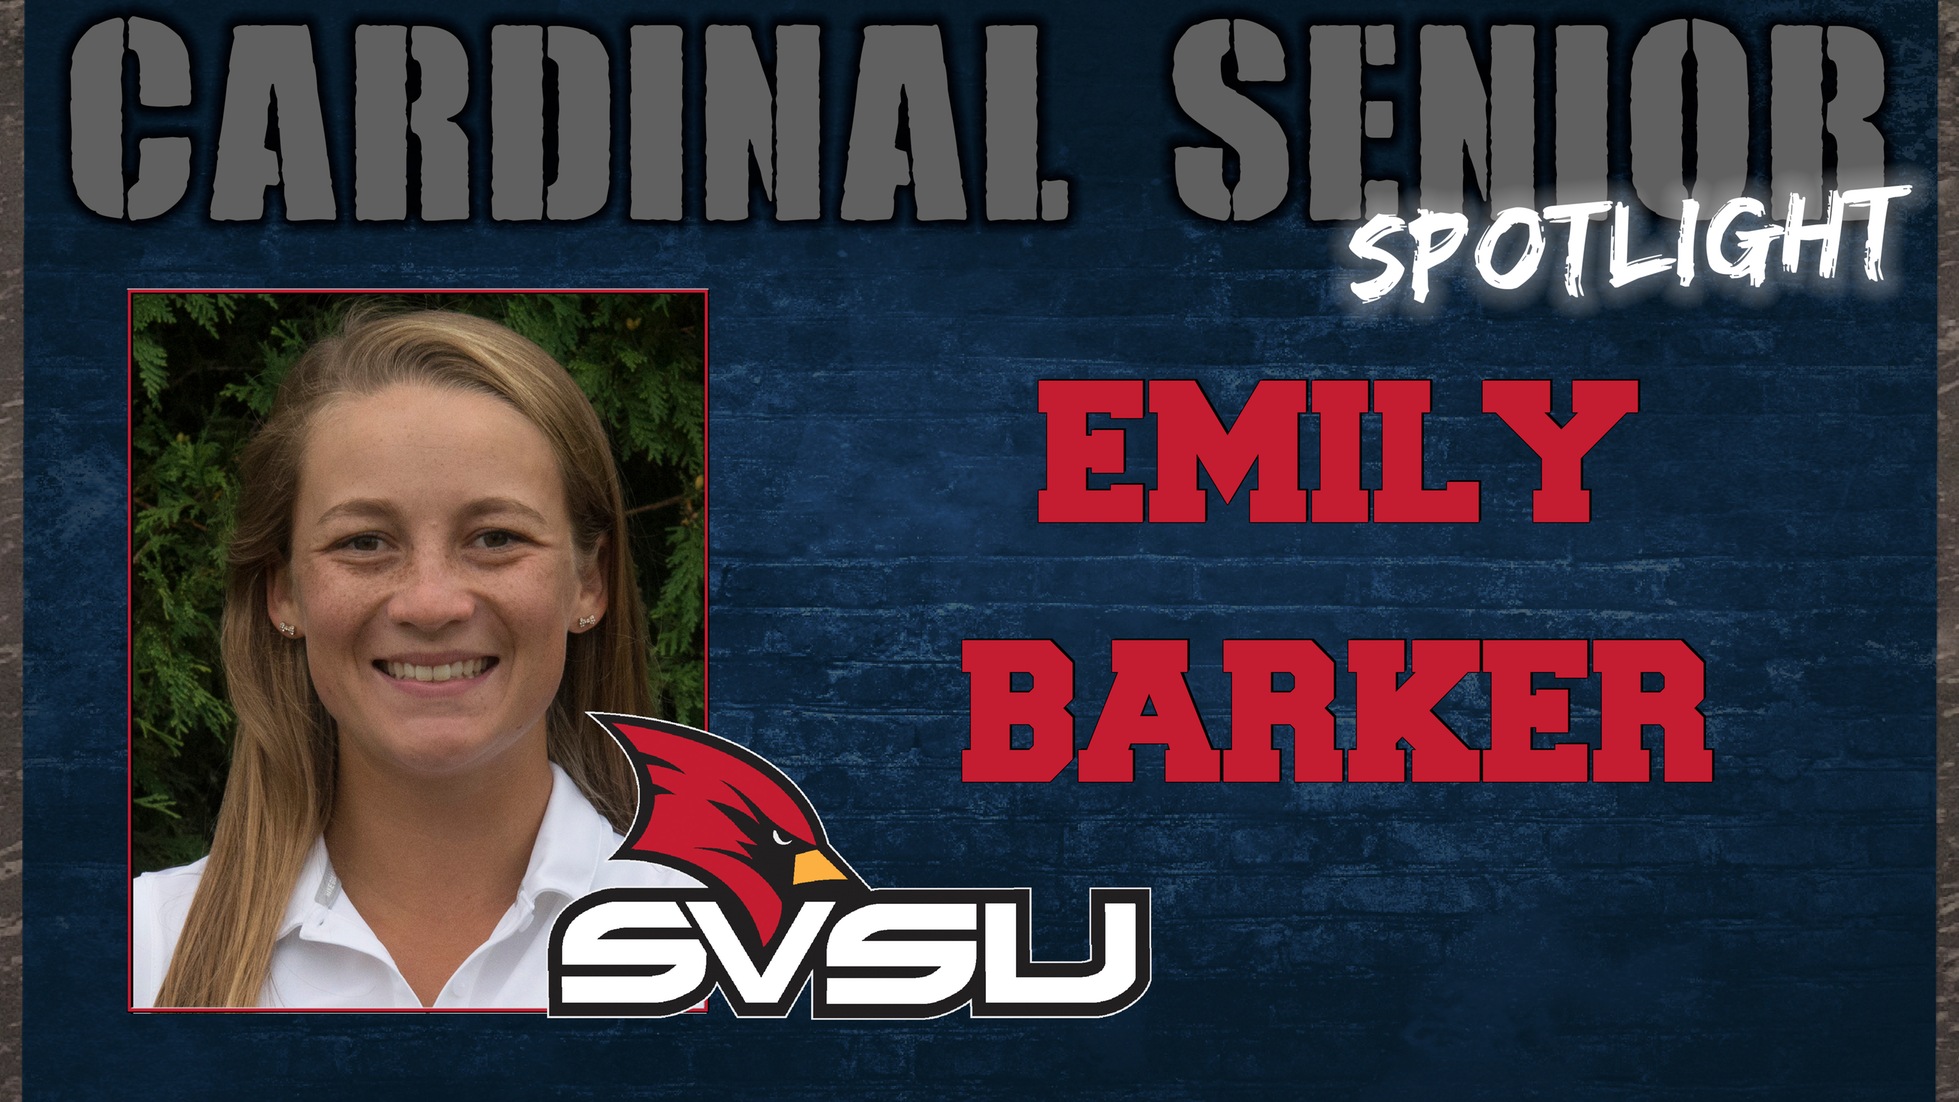 SVSU Cardinal Senior Spotlight - Emily Barker